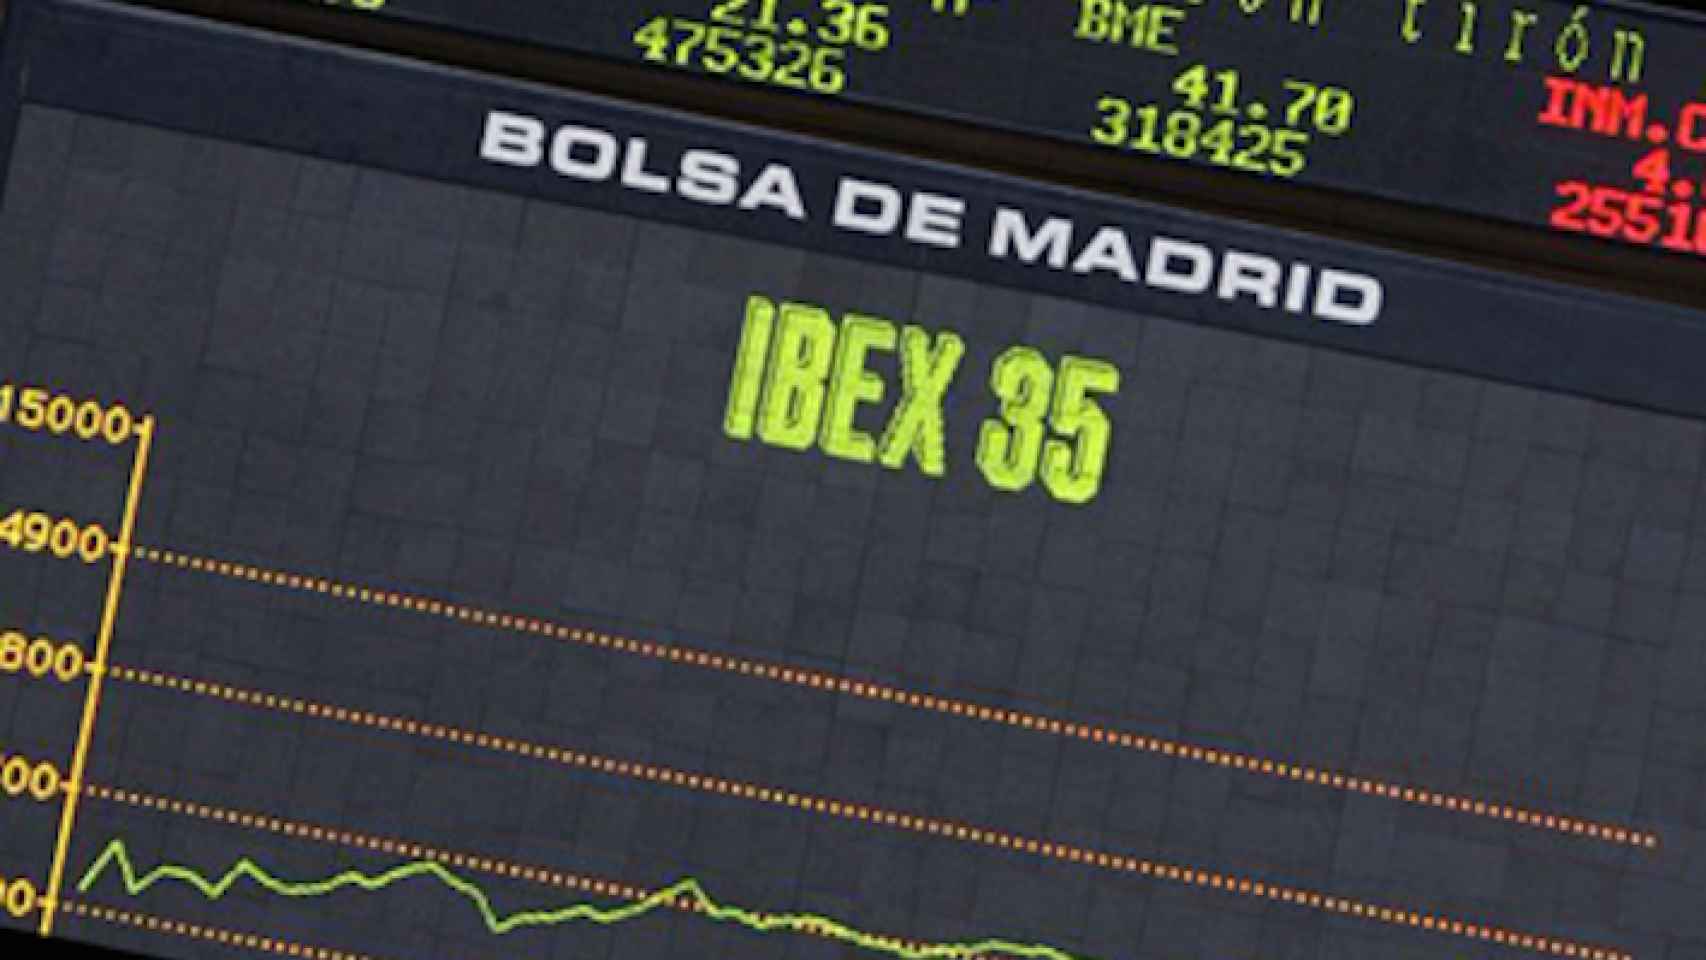 Panel de cotización del Ibex 35 en la Bolsa de Madrid.